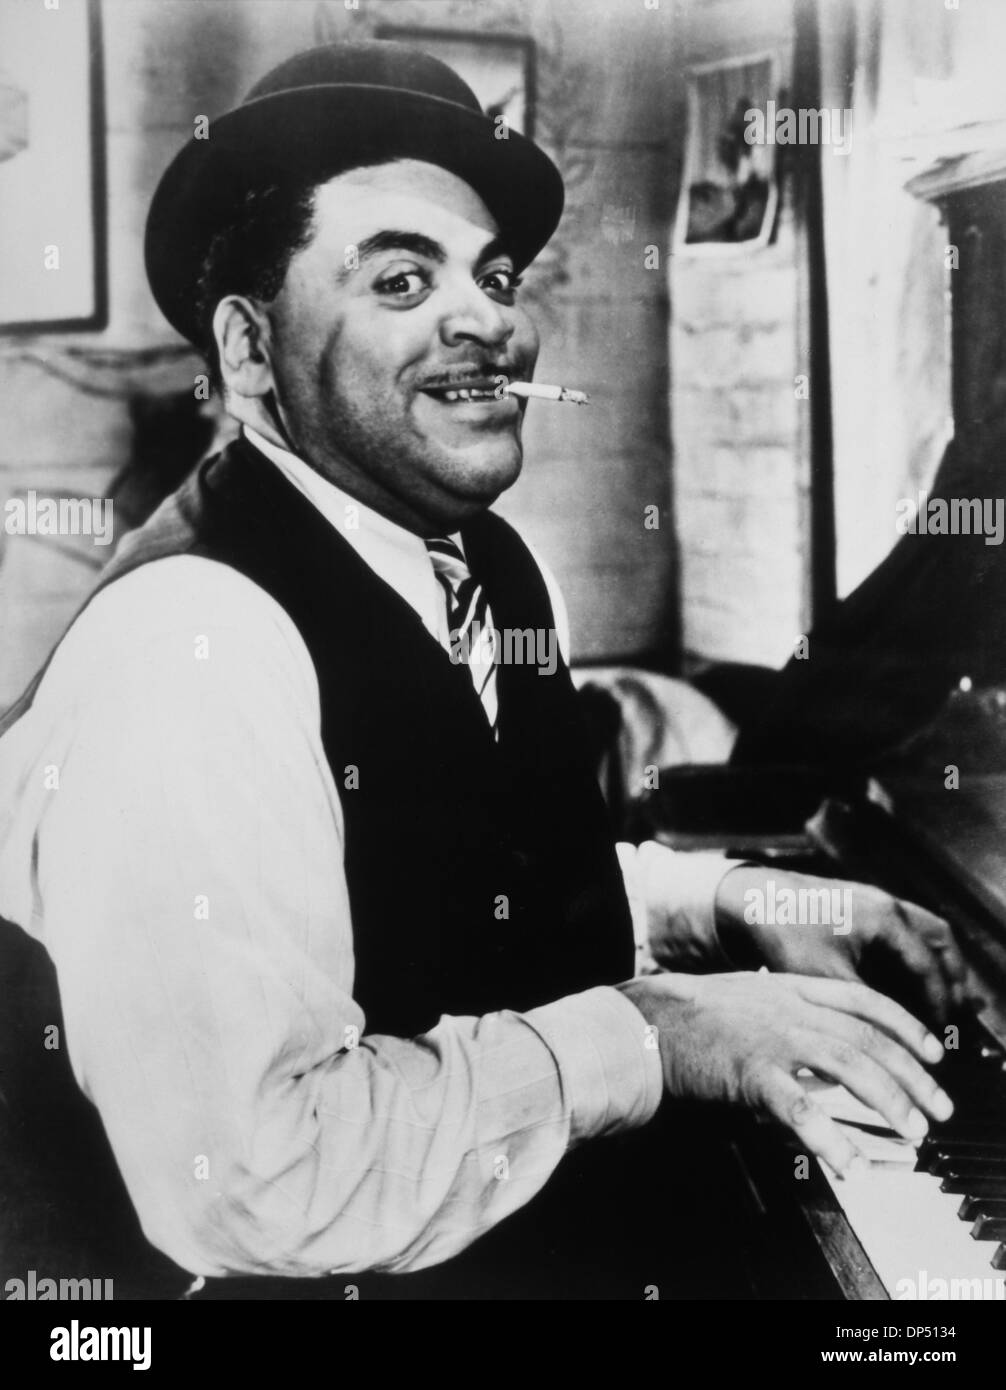 Fats Waller (1904-1943), pianiste de jazz américain, compositeur et interprète français, à jouer du piano tout en fumant une cigarette, 1942 Banque D'Images